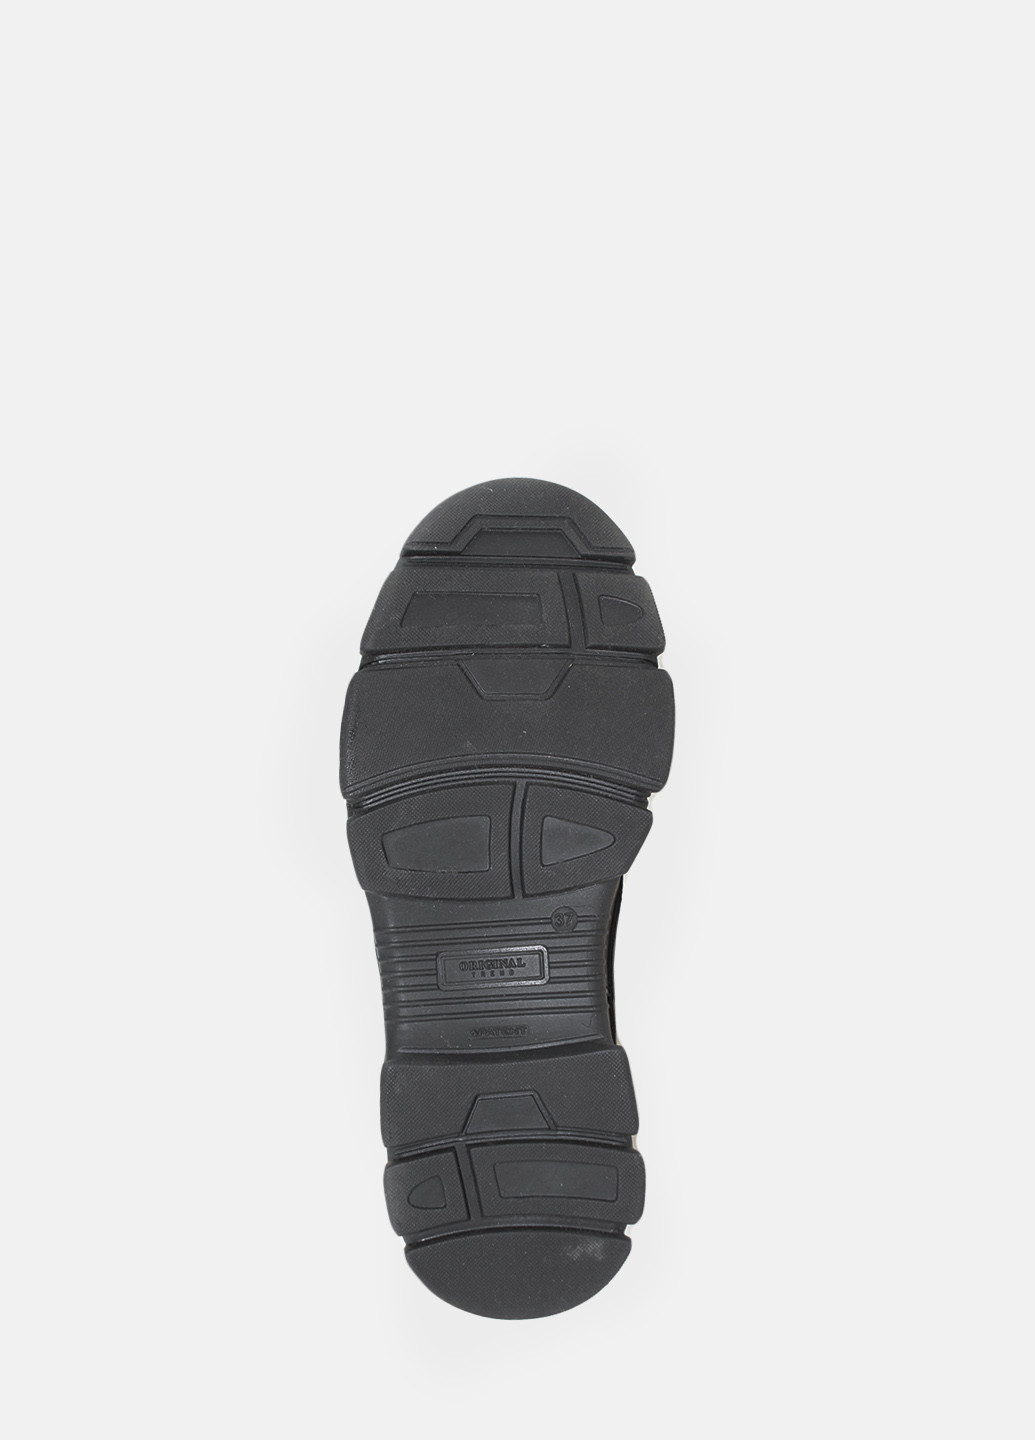 Зимние ботинки rp701 черный Passati из натуральной замши